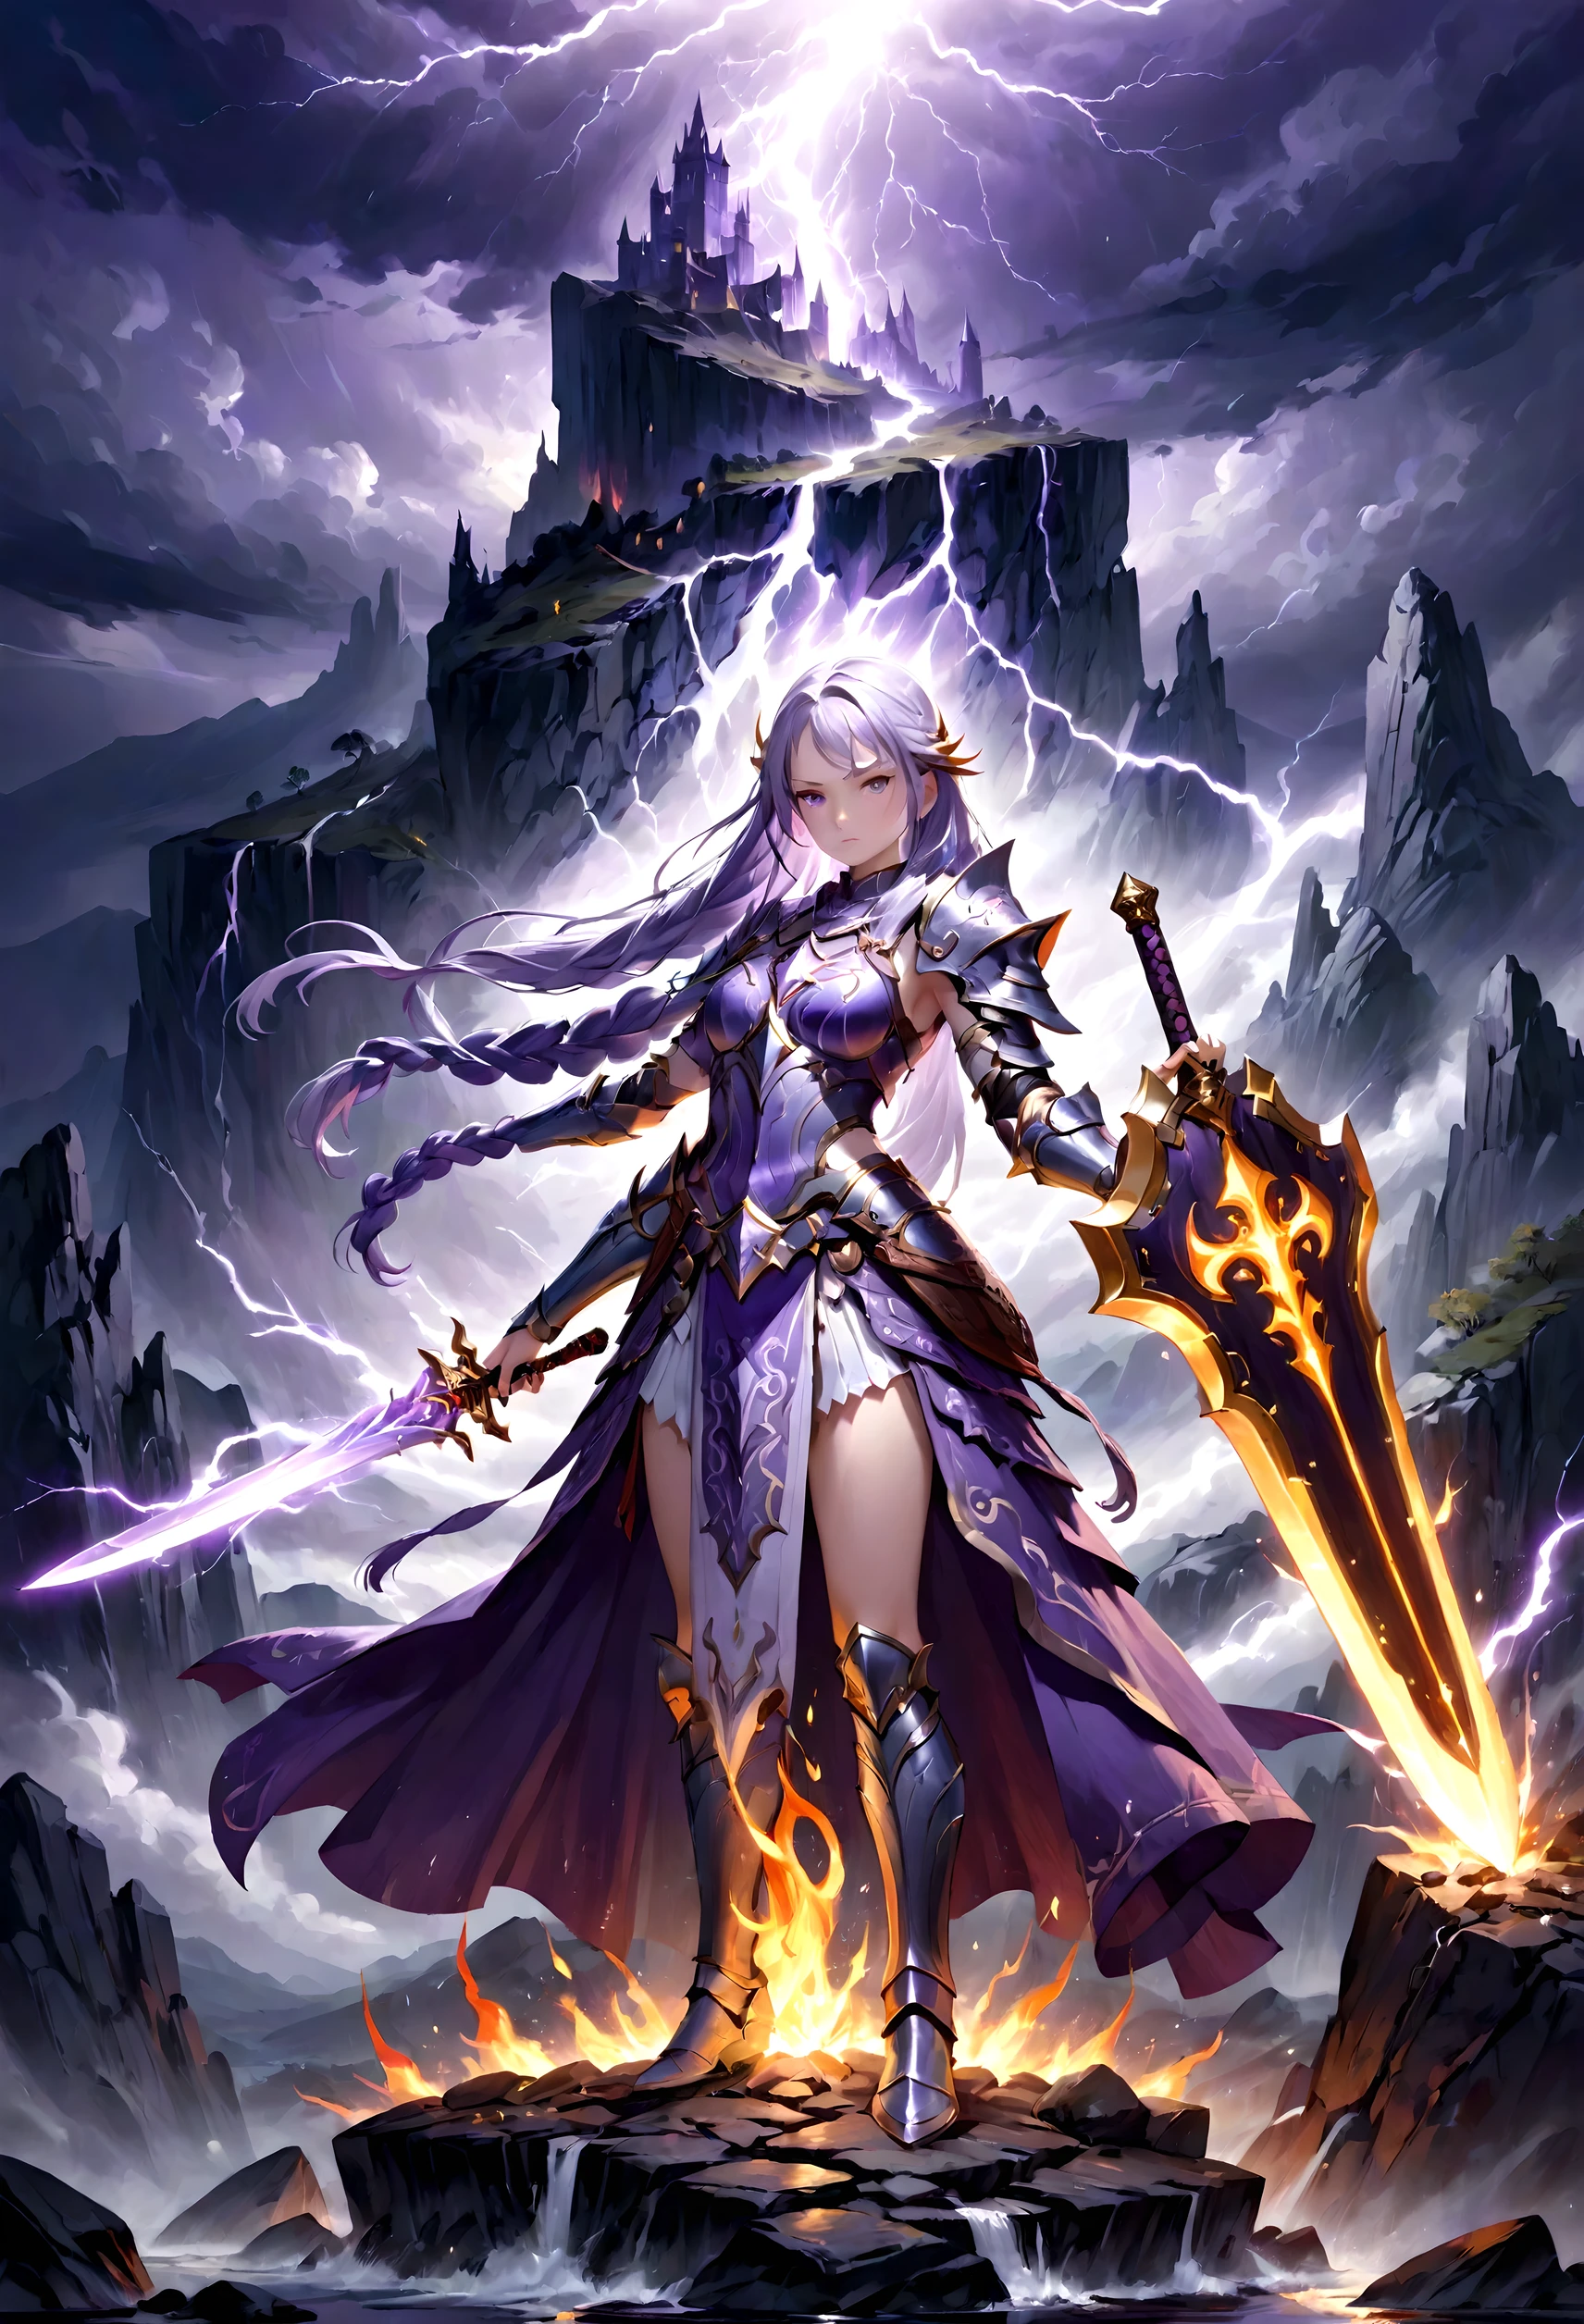 炎の魔法の剣を持つ女性戦士のイラスト, 精巧に作られた剣, 紫と白のグラデーションカラーのロングヘア, ゆるい三つ編み, LED付き鎧と盾, 滑らかな筆遣い, 非常に詳細な, ダークファンタジー, 雷雨, 岩だらけの風景